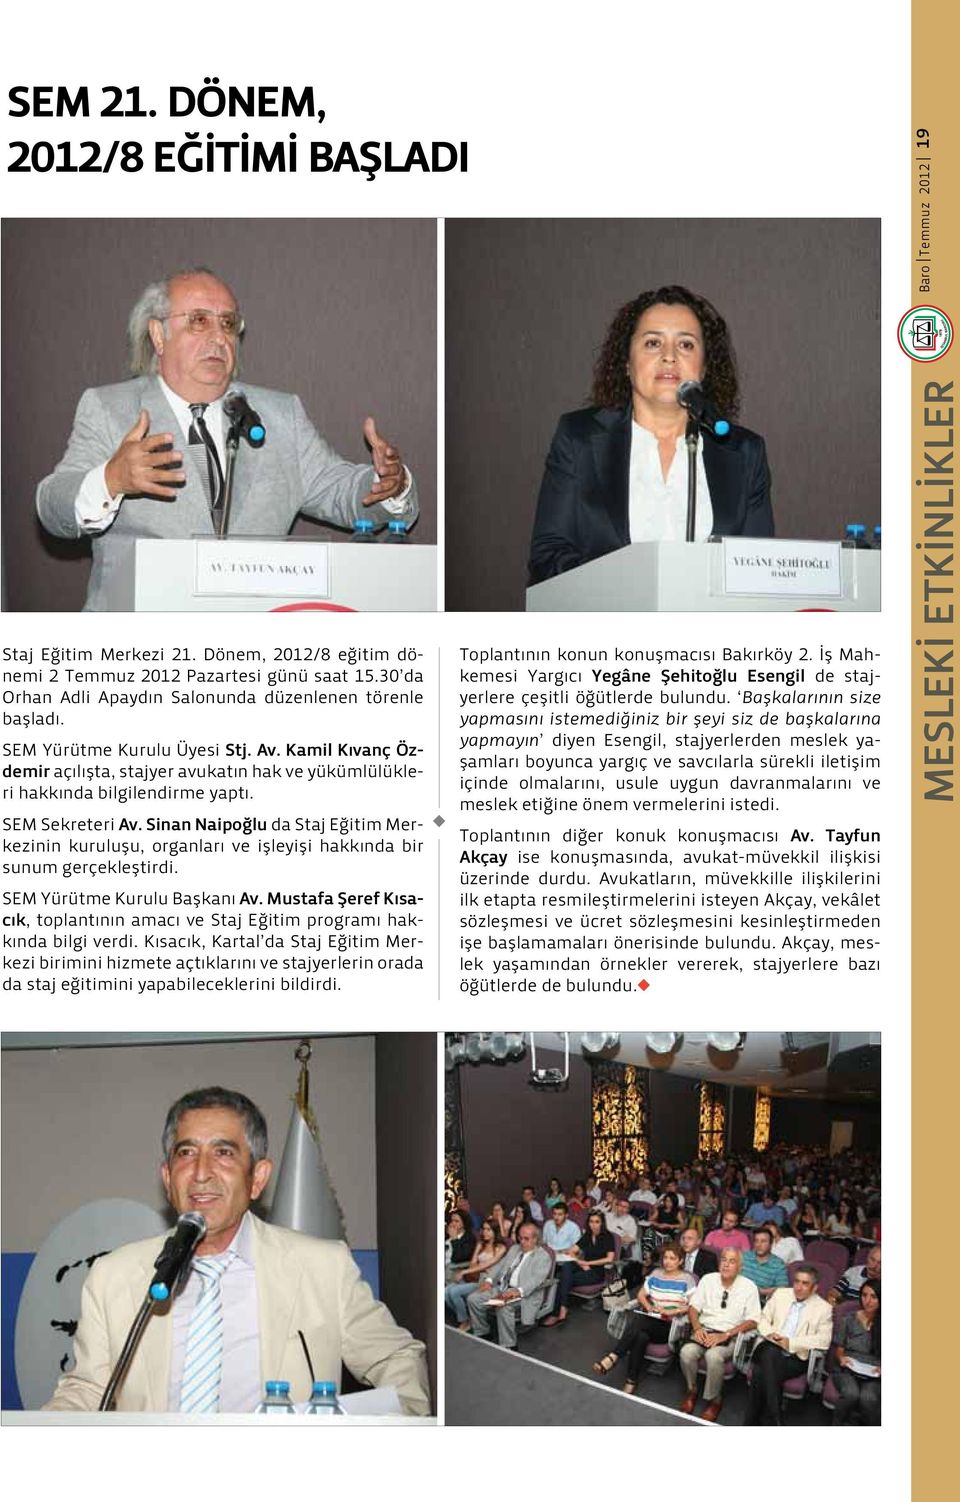 SEM Sekreteri Av. Sinan Naipoğl da Staj Eğitim Merkezinin krlş, organları ve işleyişi hakkında bir snm gerçekleştirdi. SEM Yürütme Krl Başkanı Av.